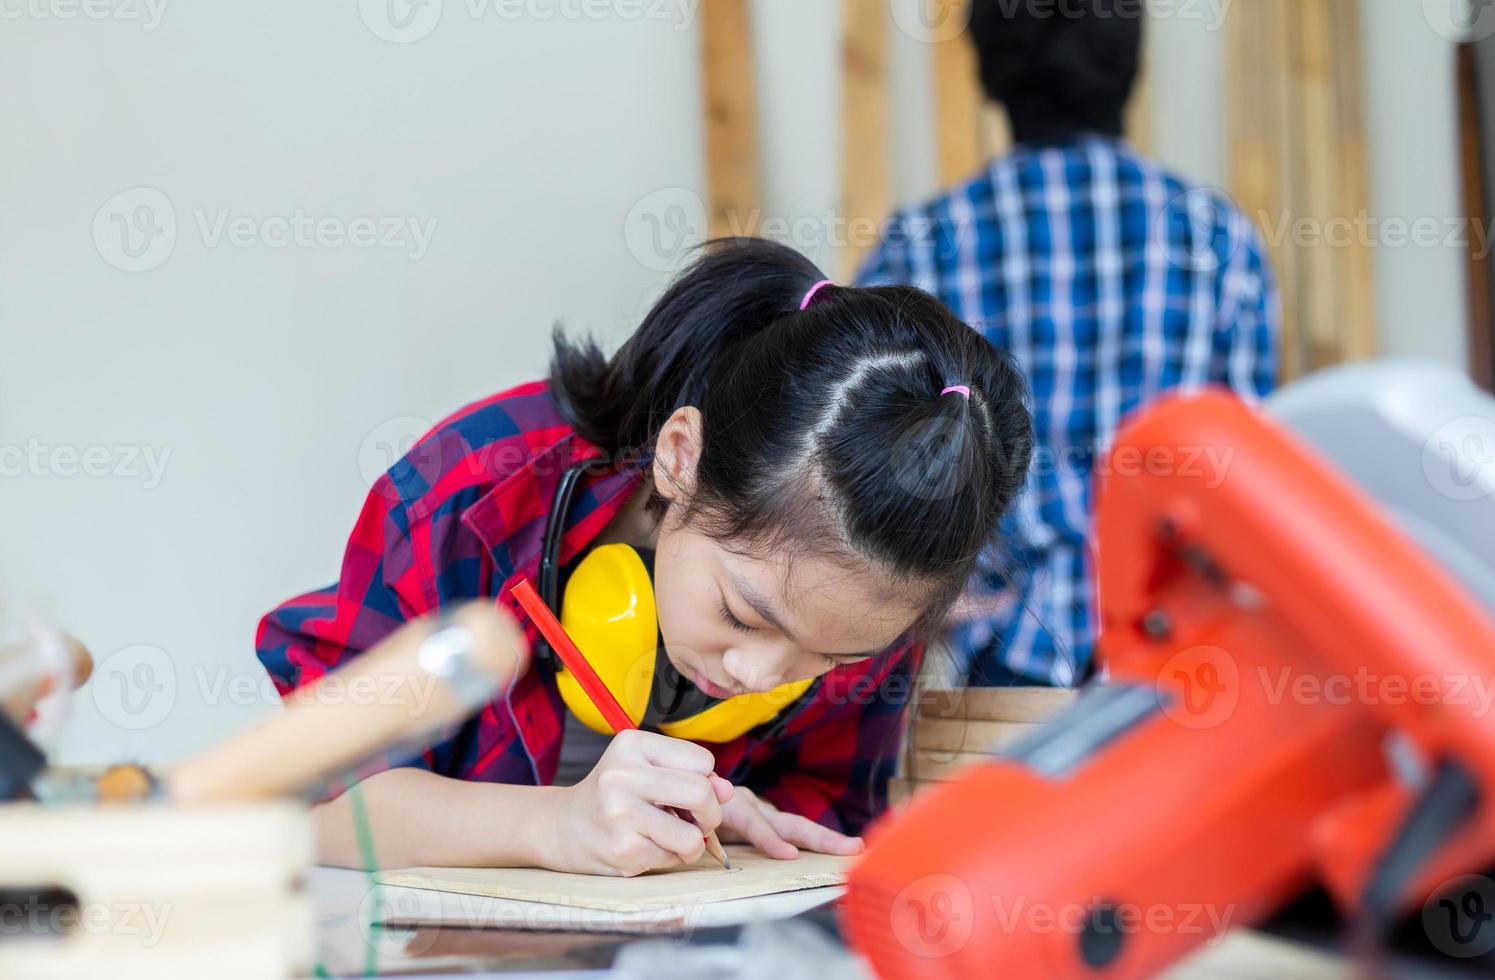 crianças aprendendo marcenaria na oficina de artesão, menino adolescente com sua irmãzinha construindo uma oficina juntos em uma oficina de carpintaria. foto